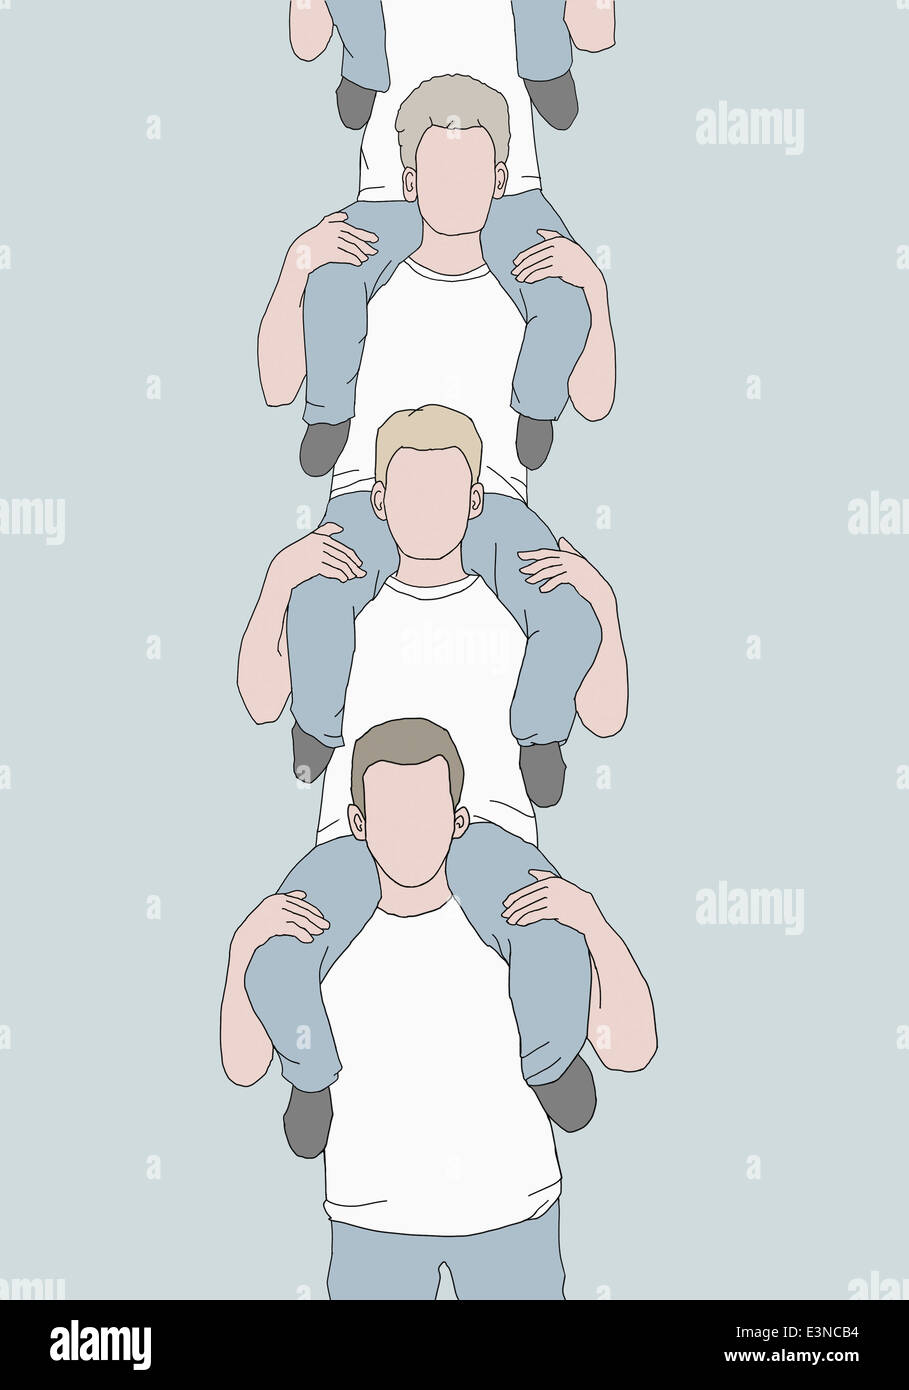 Image d'illustration de plusieurs hommes portant sur leurs épaules les uns les autres Banque D'Images